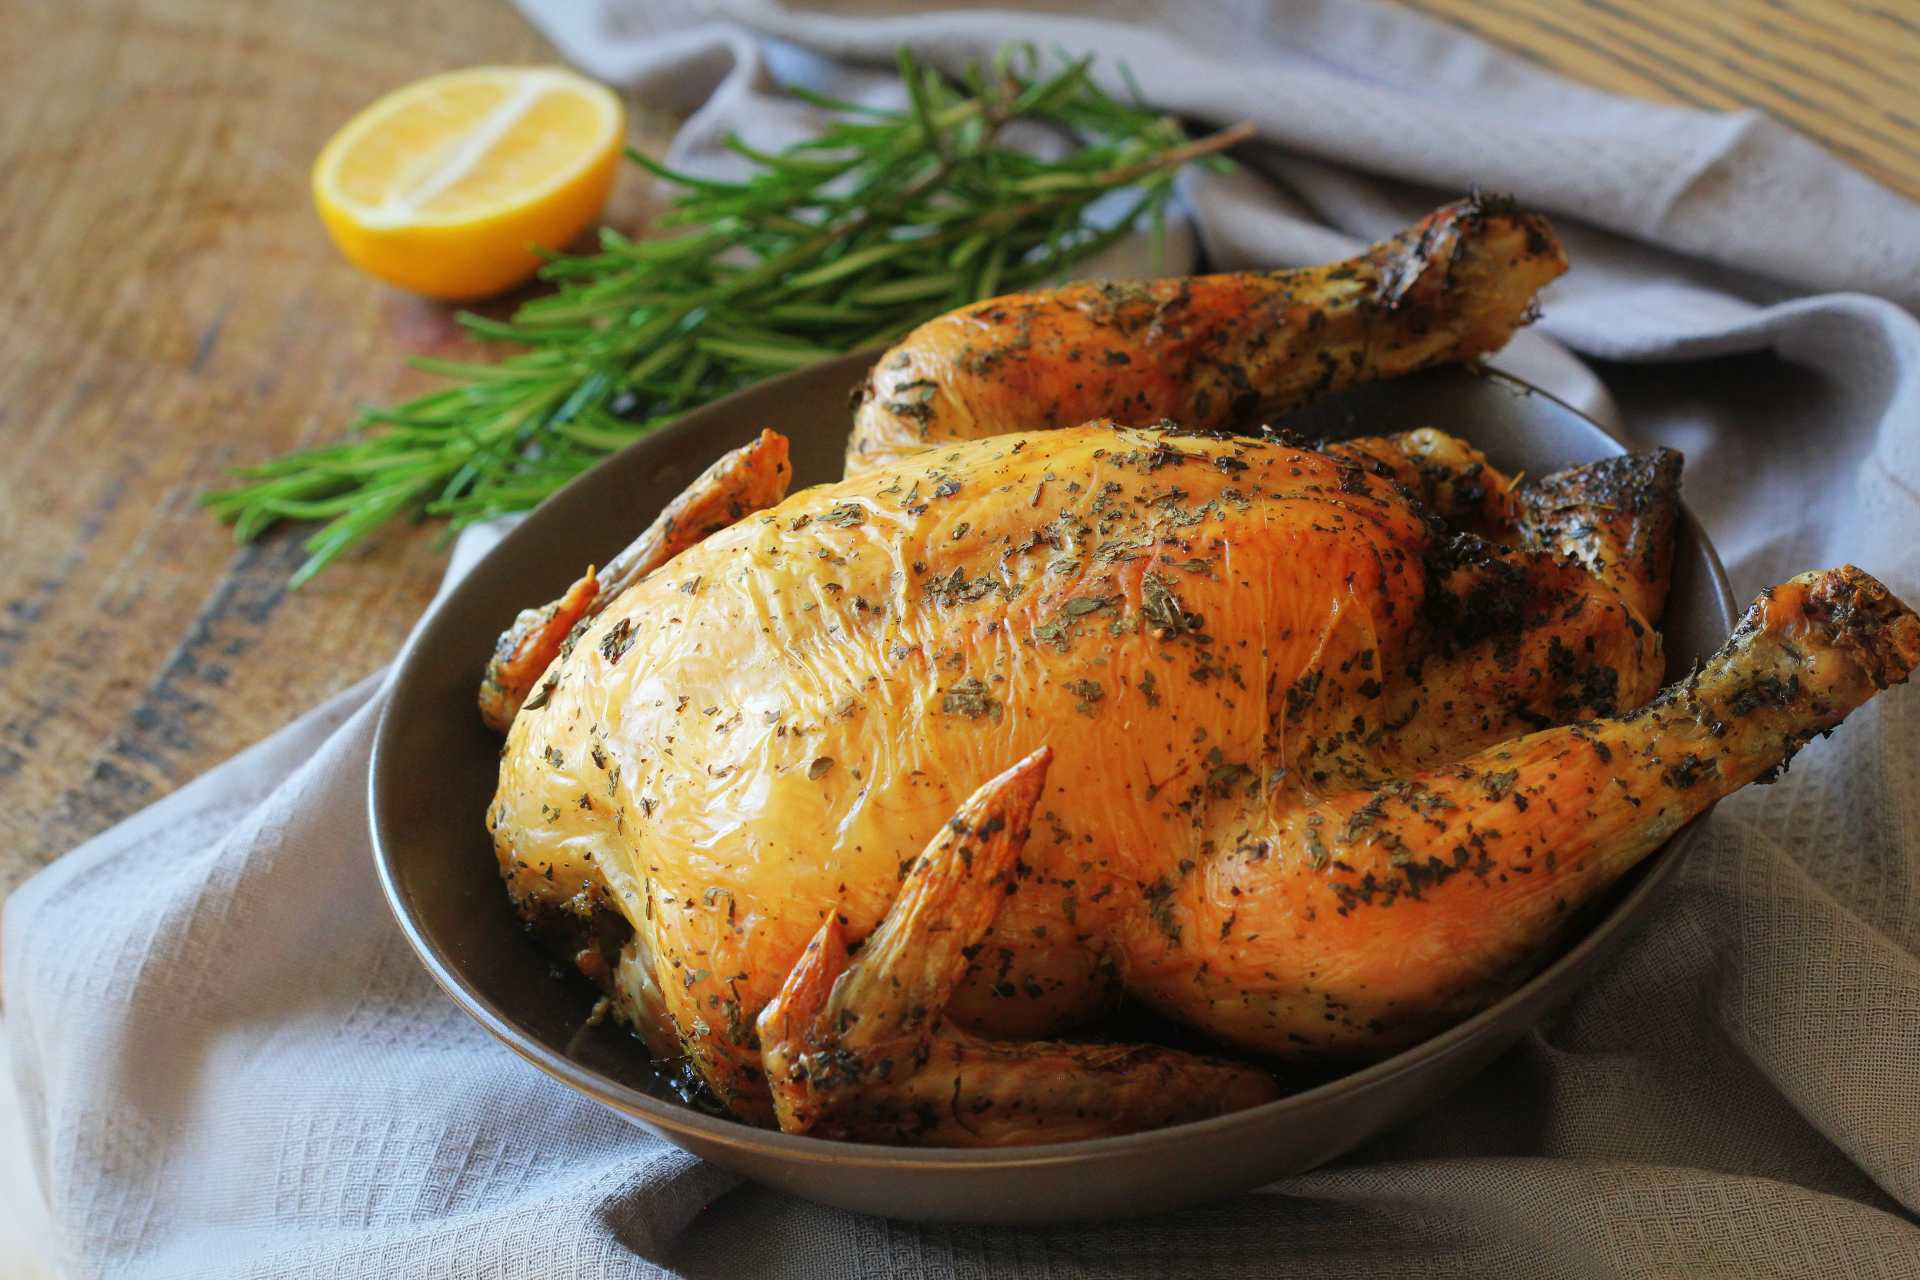 What temperature should I cook a 25 lb turkey at?